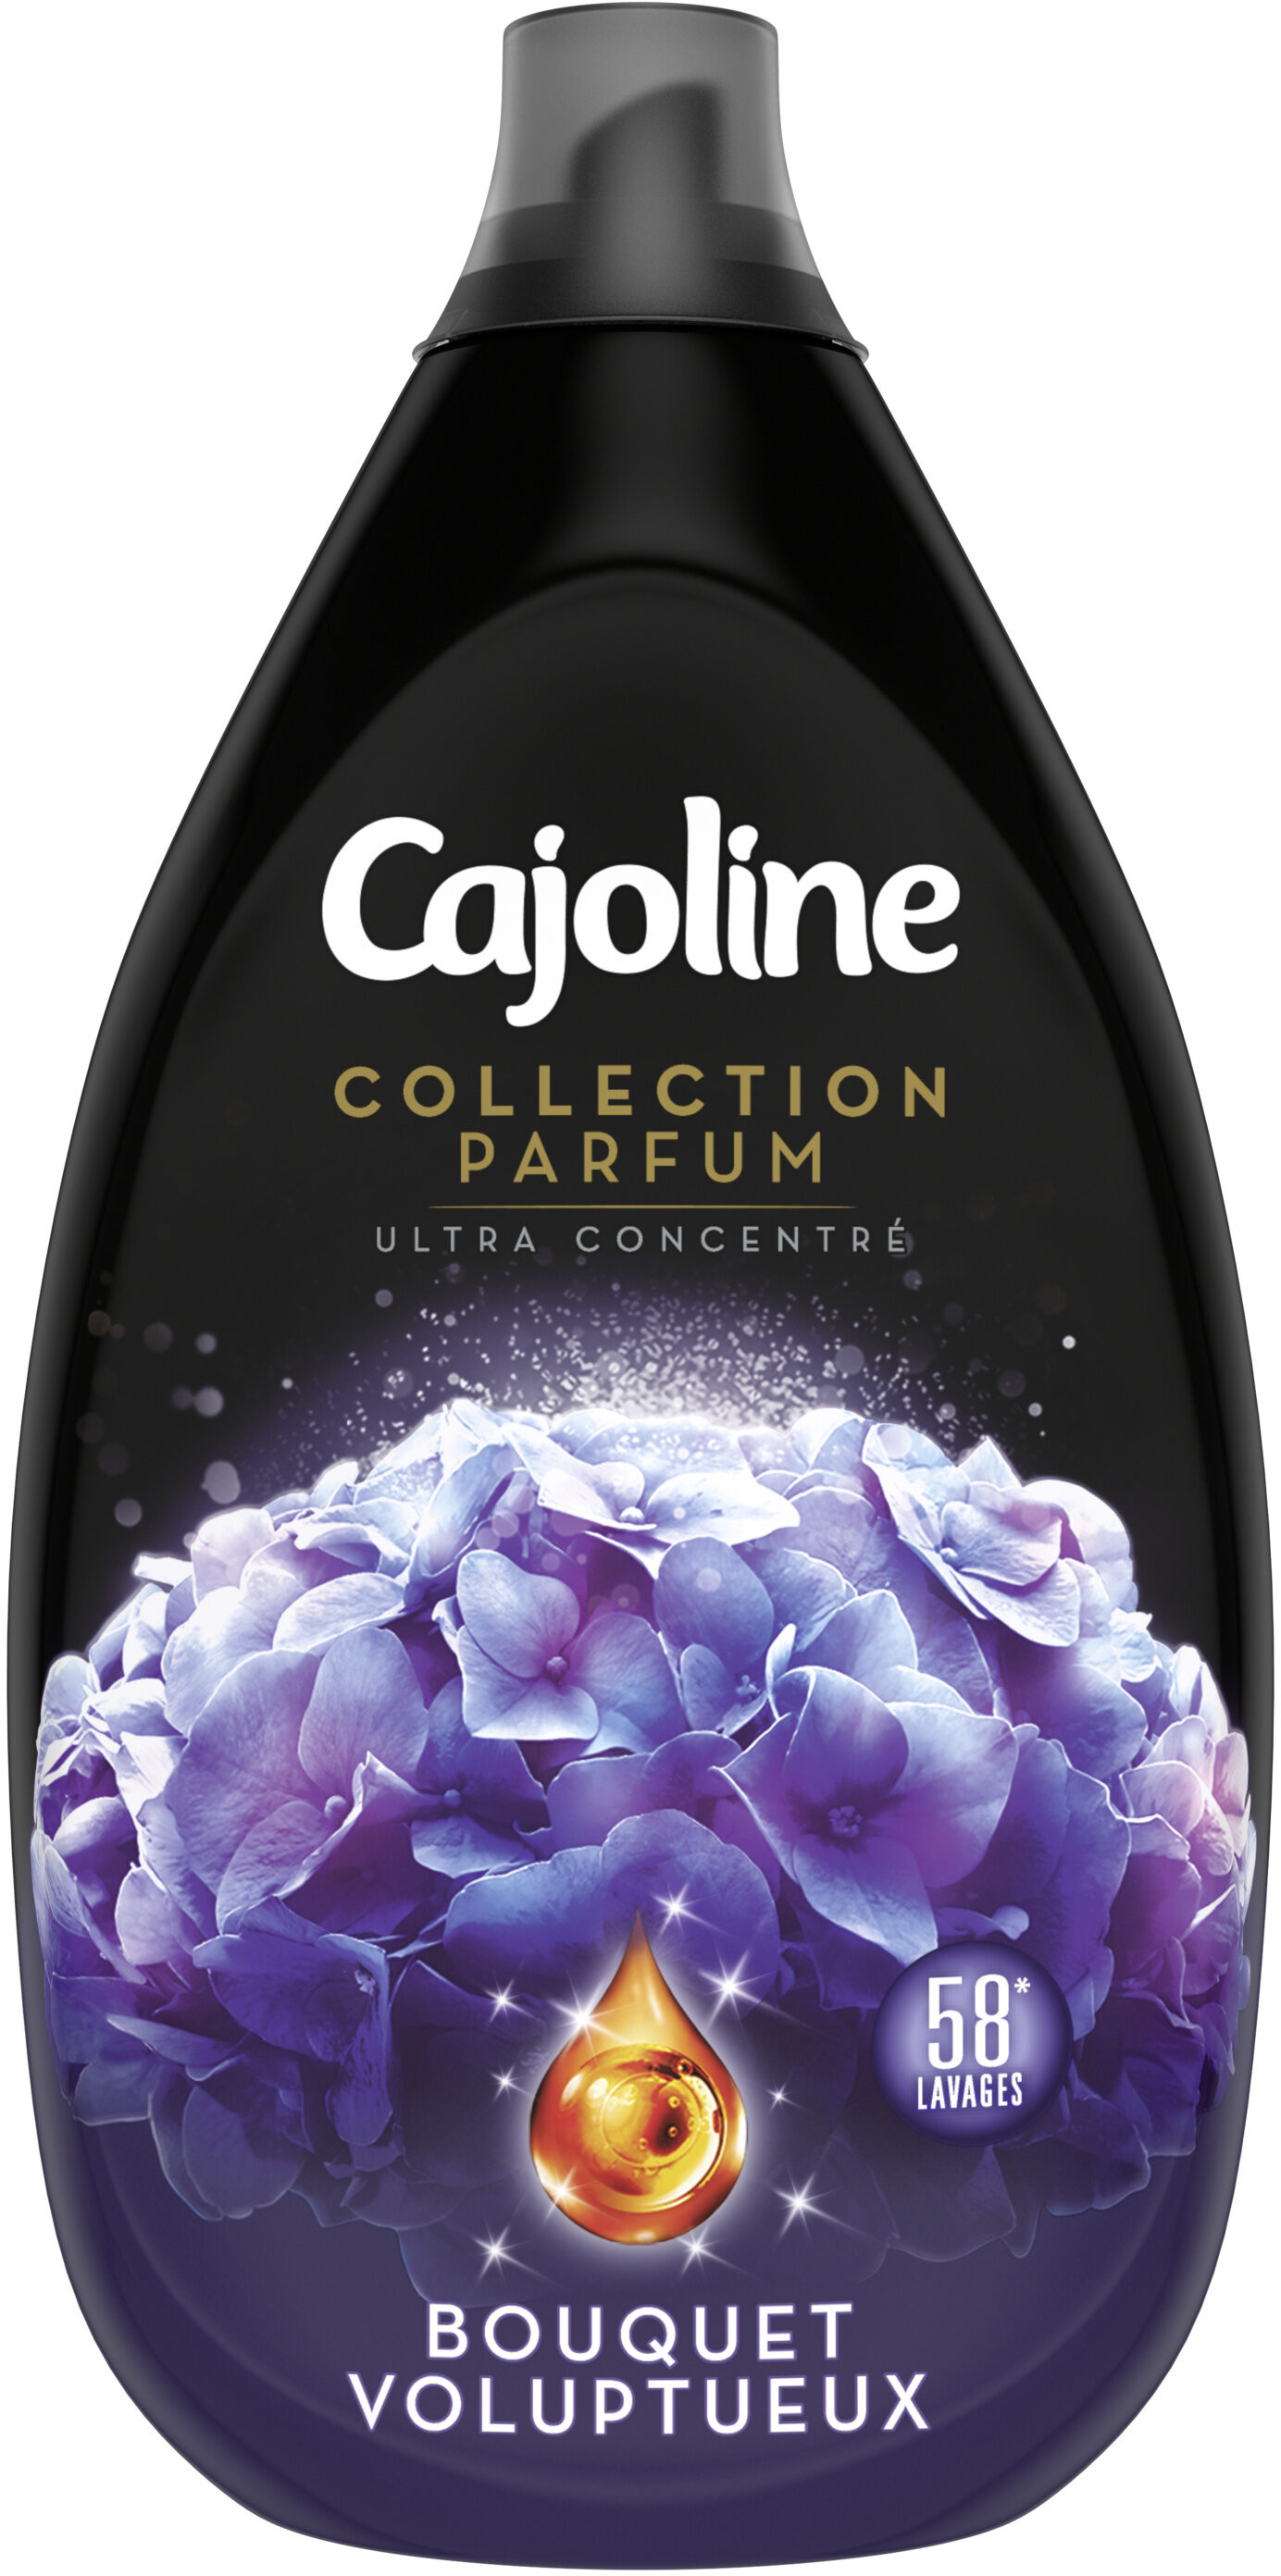 Cajoline Collection Parfum Assouplissant Ultra Concentré Bouquet Voluptueux 870ml 58 Lavages - Product - fr